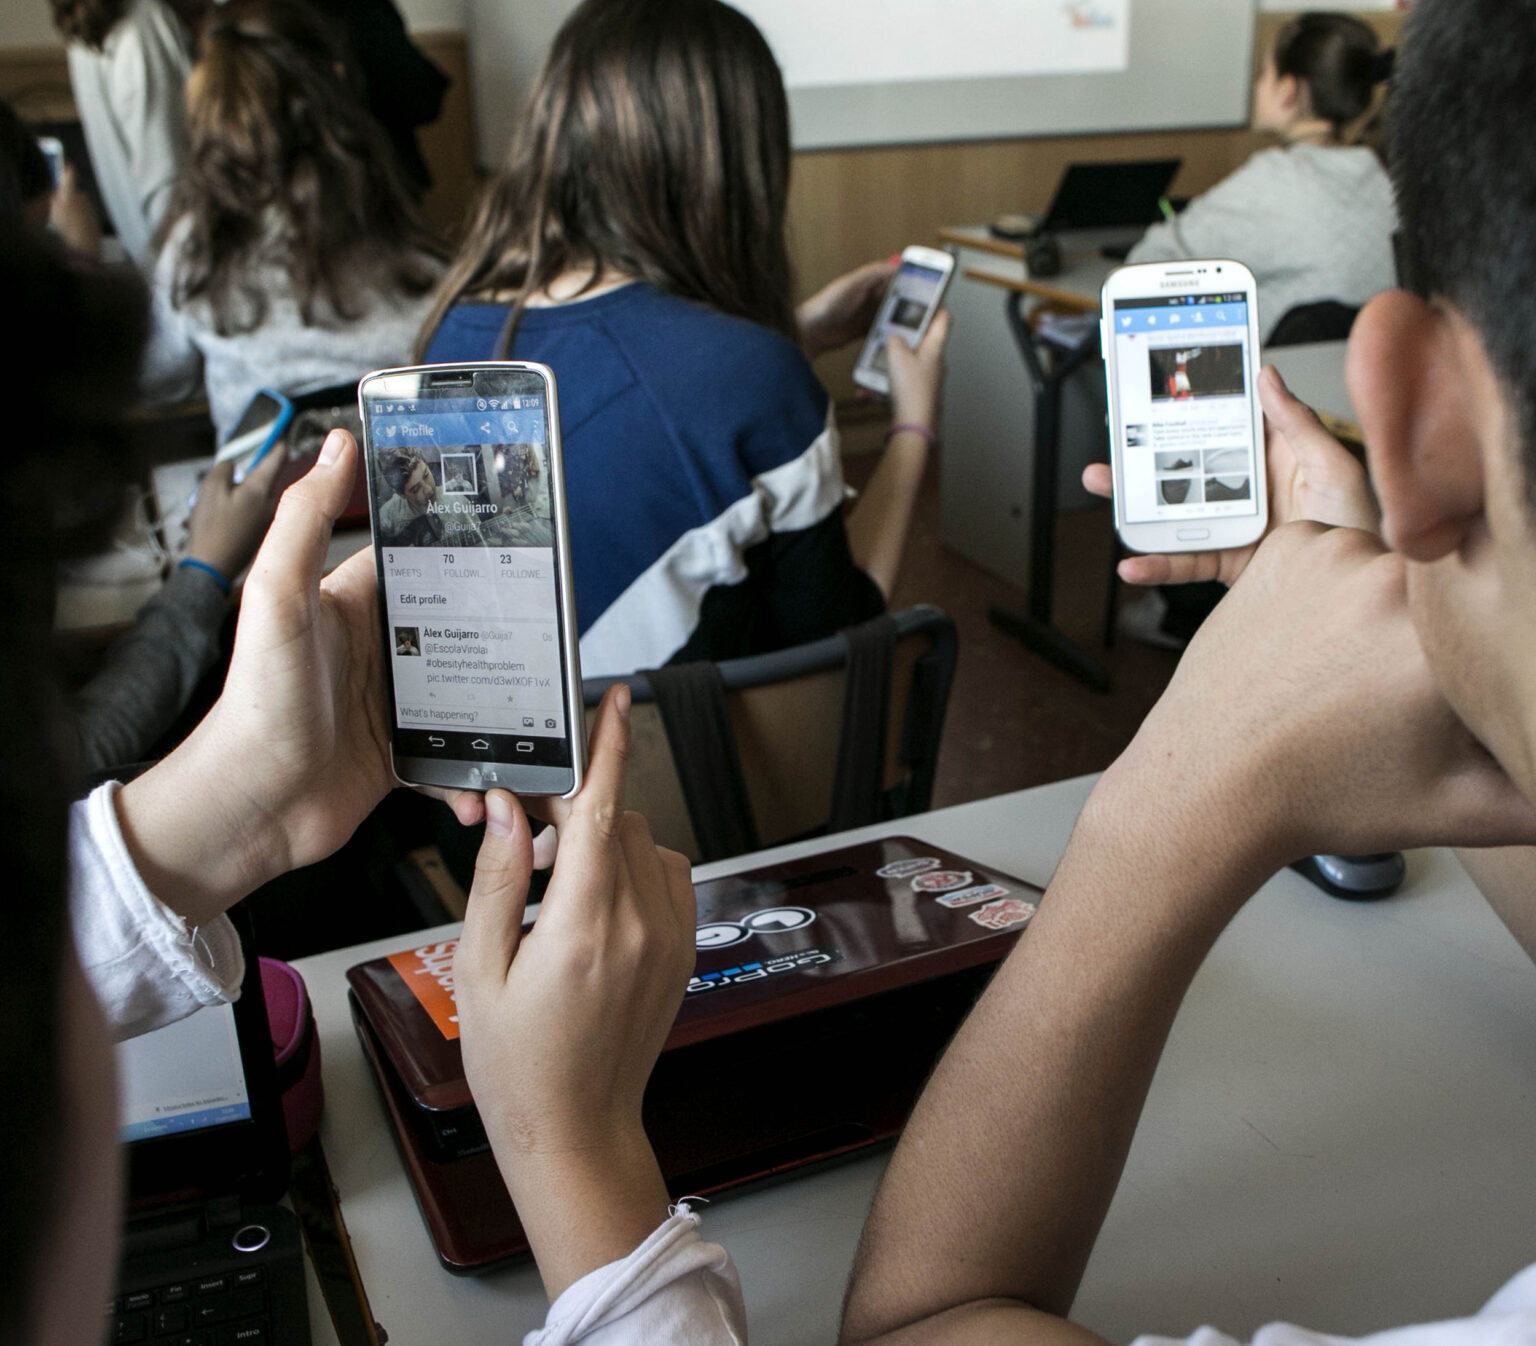 Dezbateri aprinse: Ar trebui ca școlile să interzică telefoanele mobile? Părinții sunt dezbinați